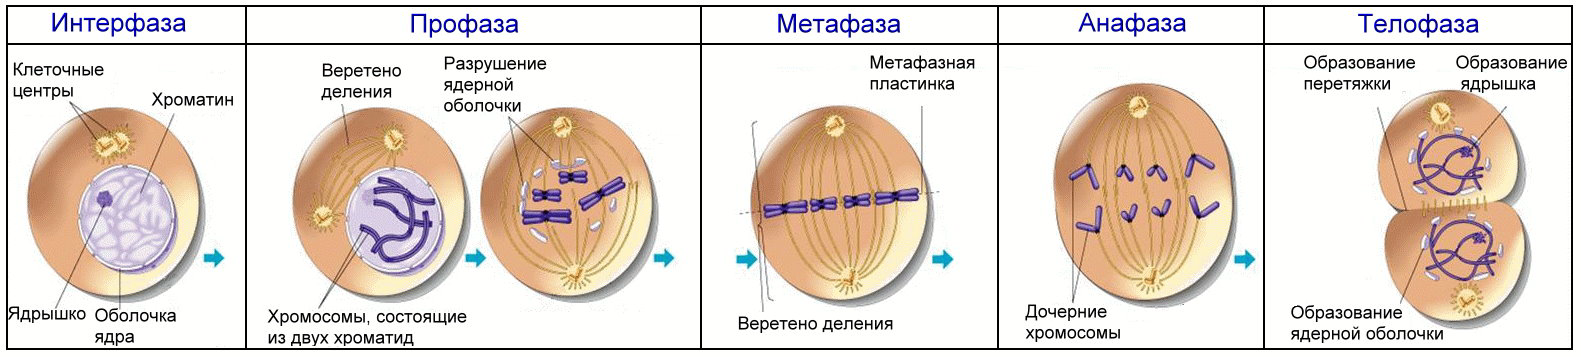 Когда будет первый этап. Формирование веретена деления митоз. Фазы клеточного цикла митоза. Фаза деления клетки 4n4c.